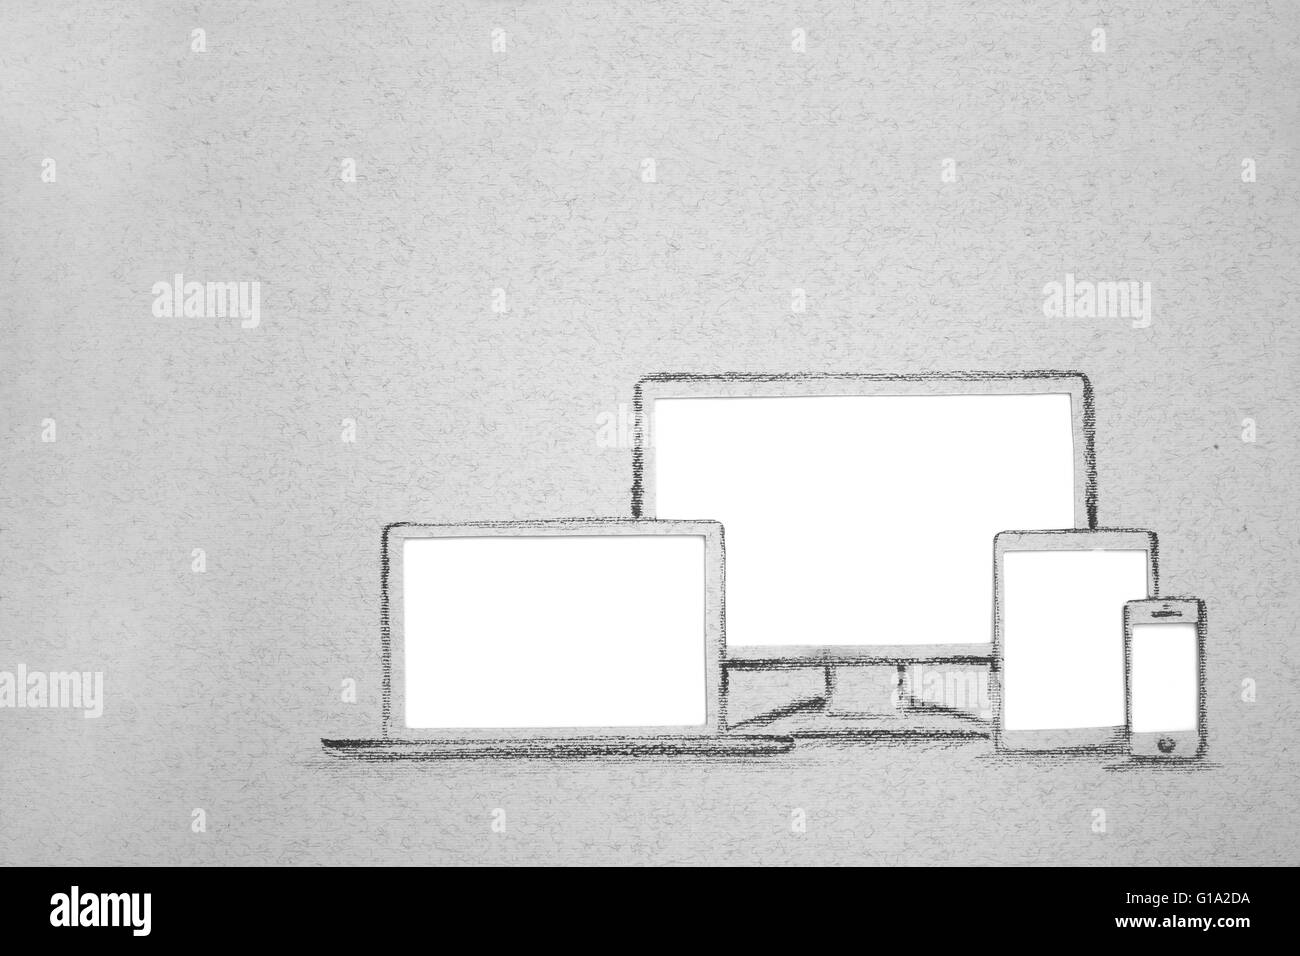 La fotografia del dispositivo impostato disegnato su carta grigia con copia bianca spazio isolato, monitor laptop tablet pc telefono cellulare smartphone Foto Stock